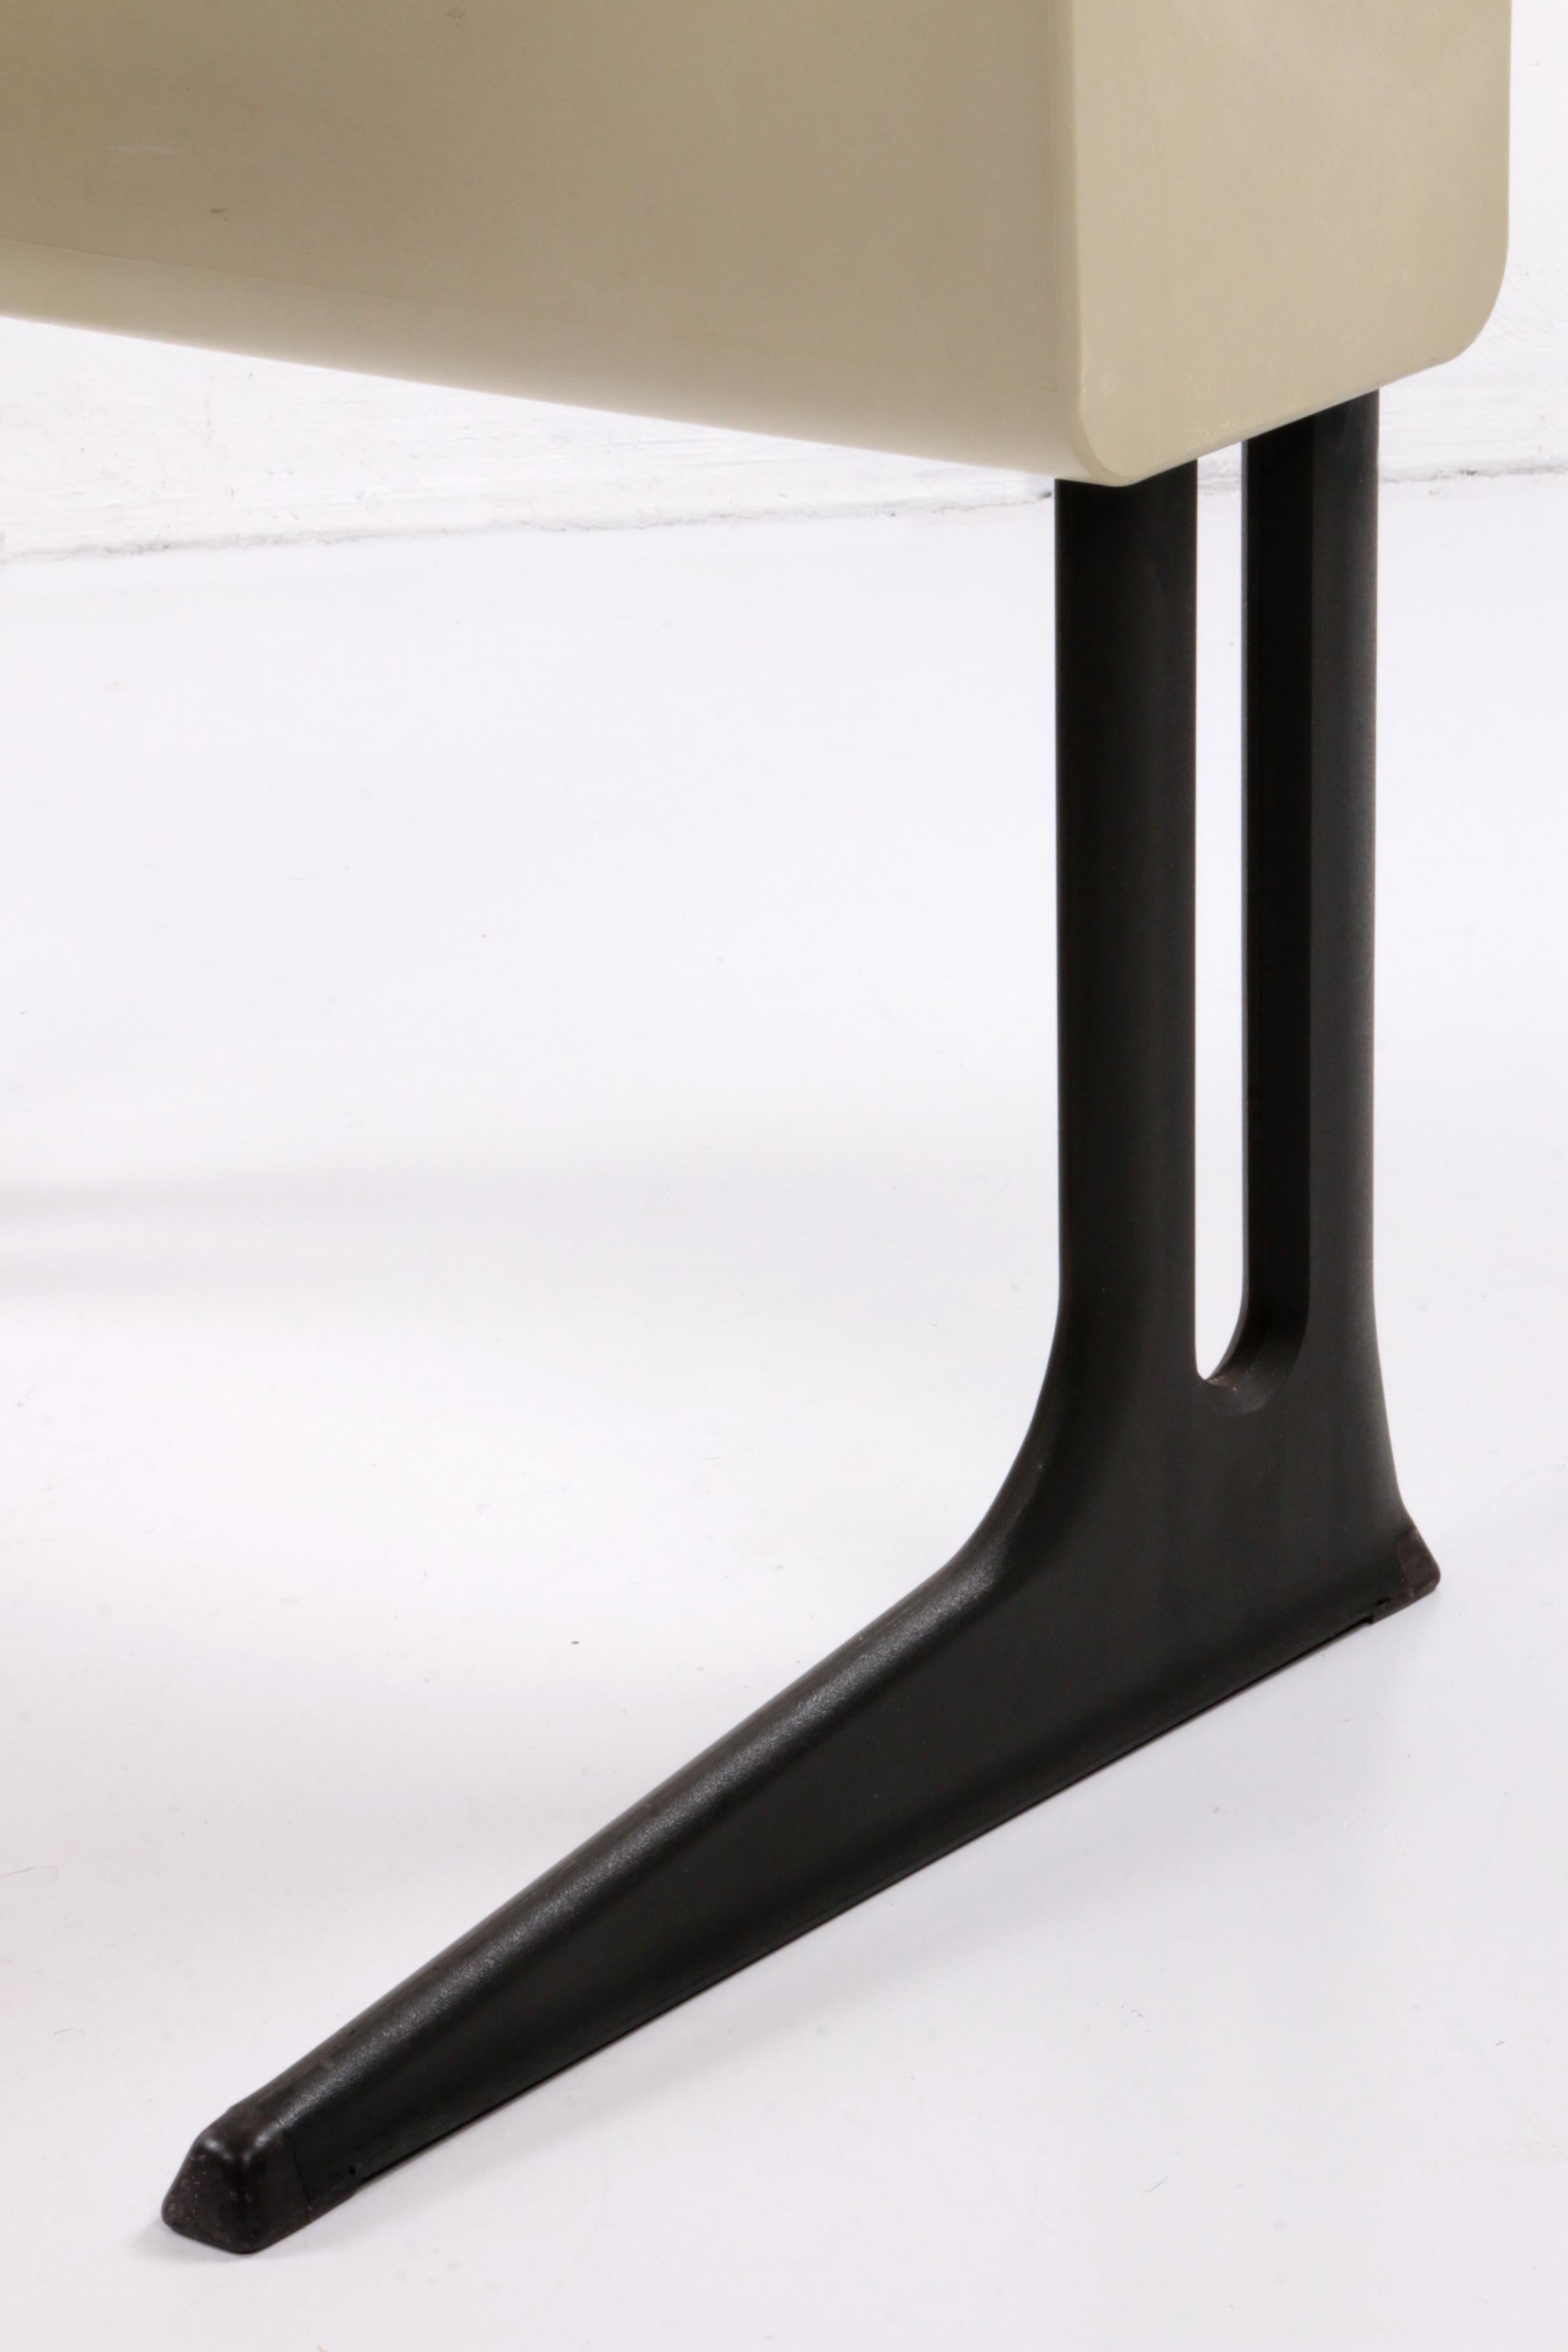 Flötotto Adjustable Desk Design by Luigi Colani, 1970, Germany 6